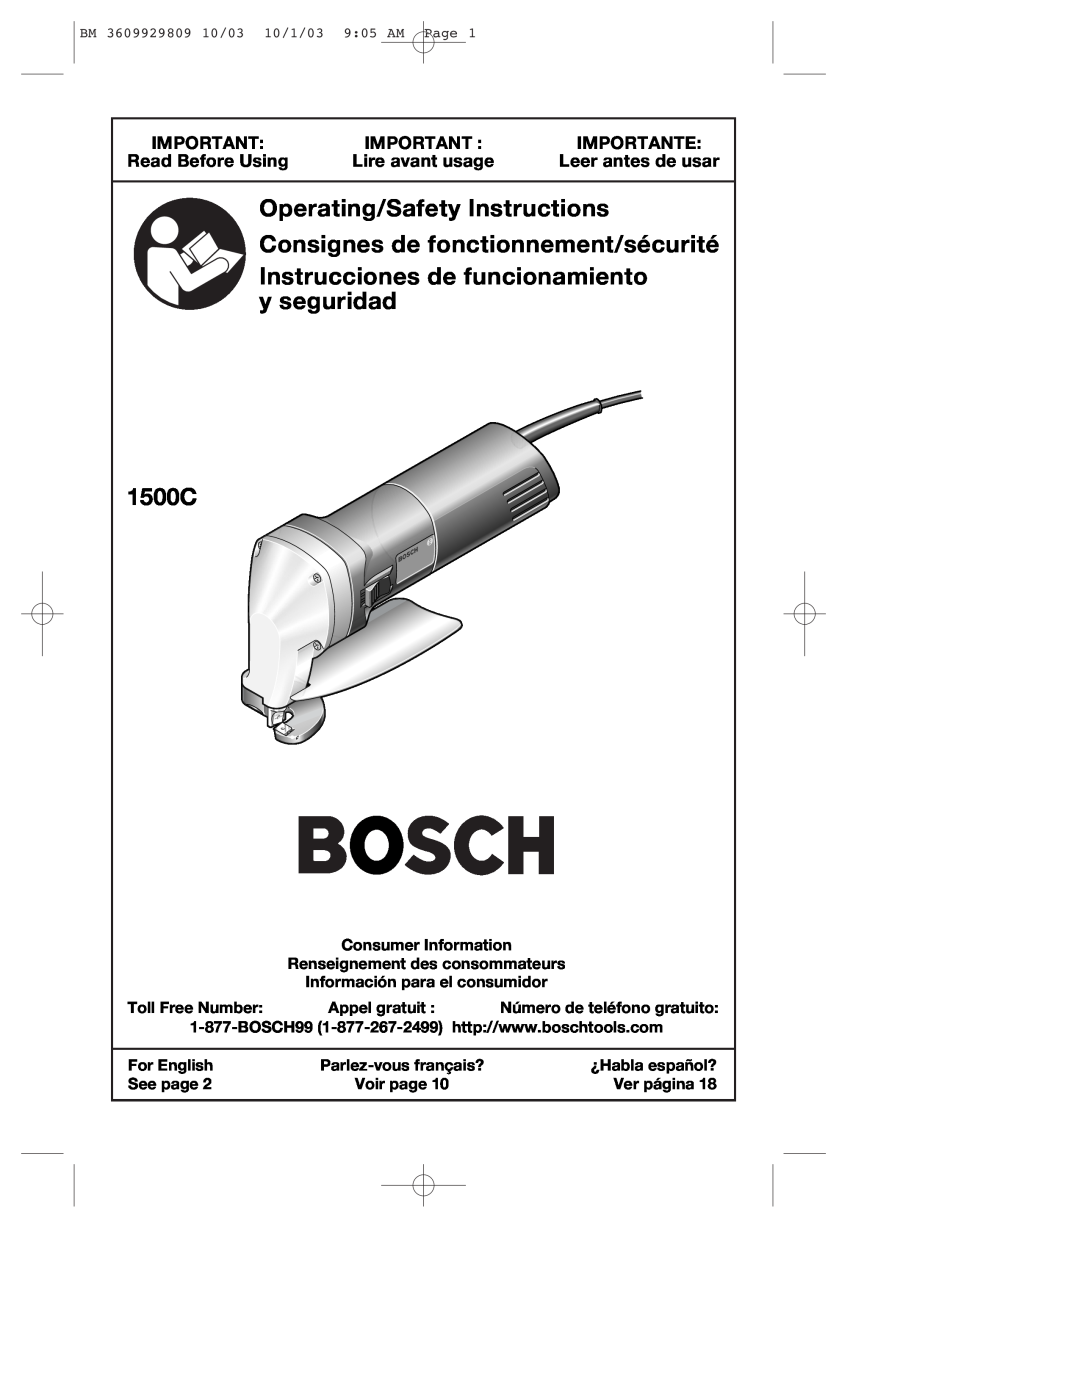 Bosch Power Tools 1500C manual Importante, Read Before Using, Lire avant usage, Leer antes de usar, y seguridad 